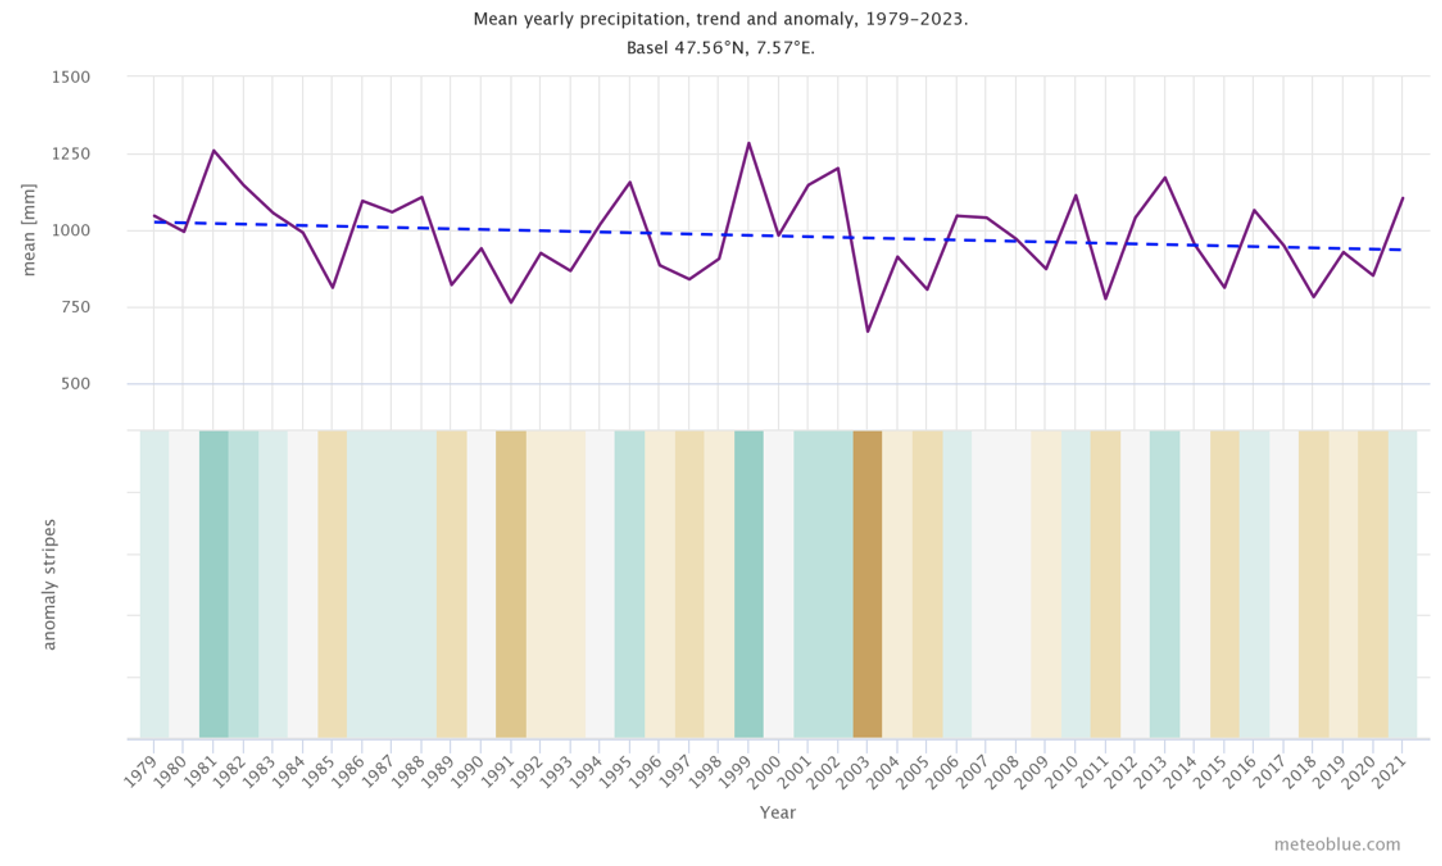 precipitação média anual, tendência e anomalia para Basiléia, Suíça.